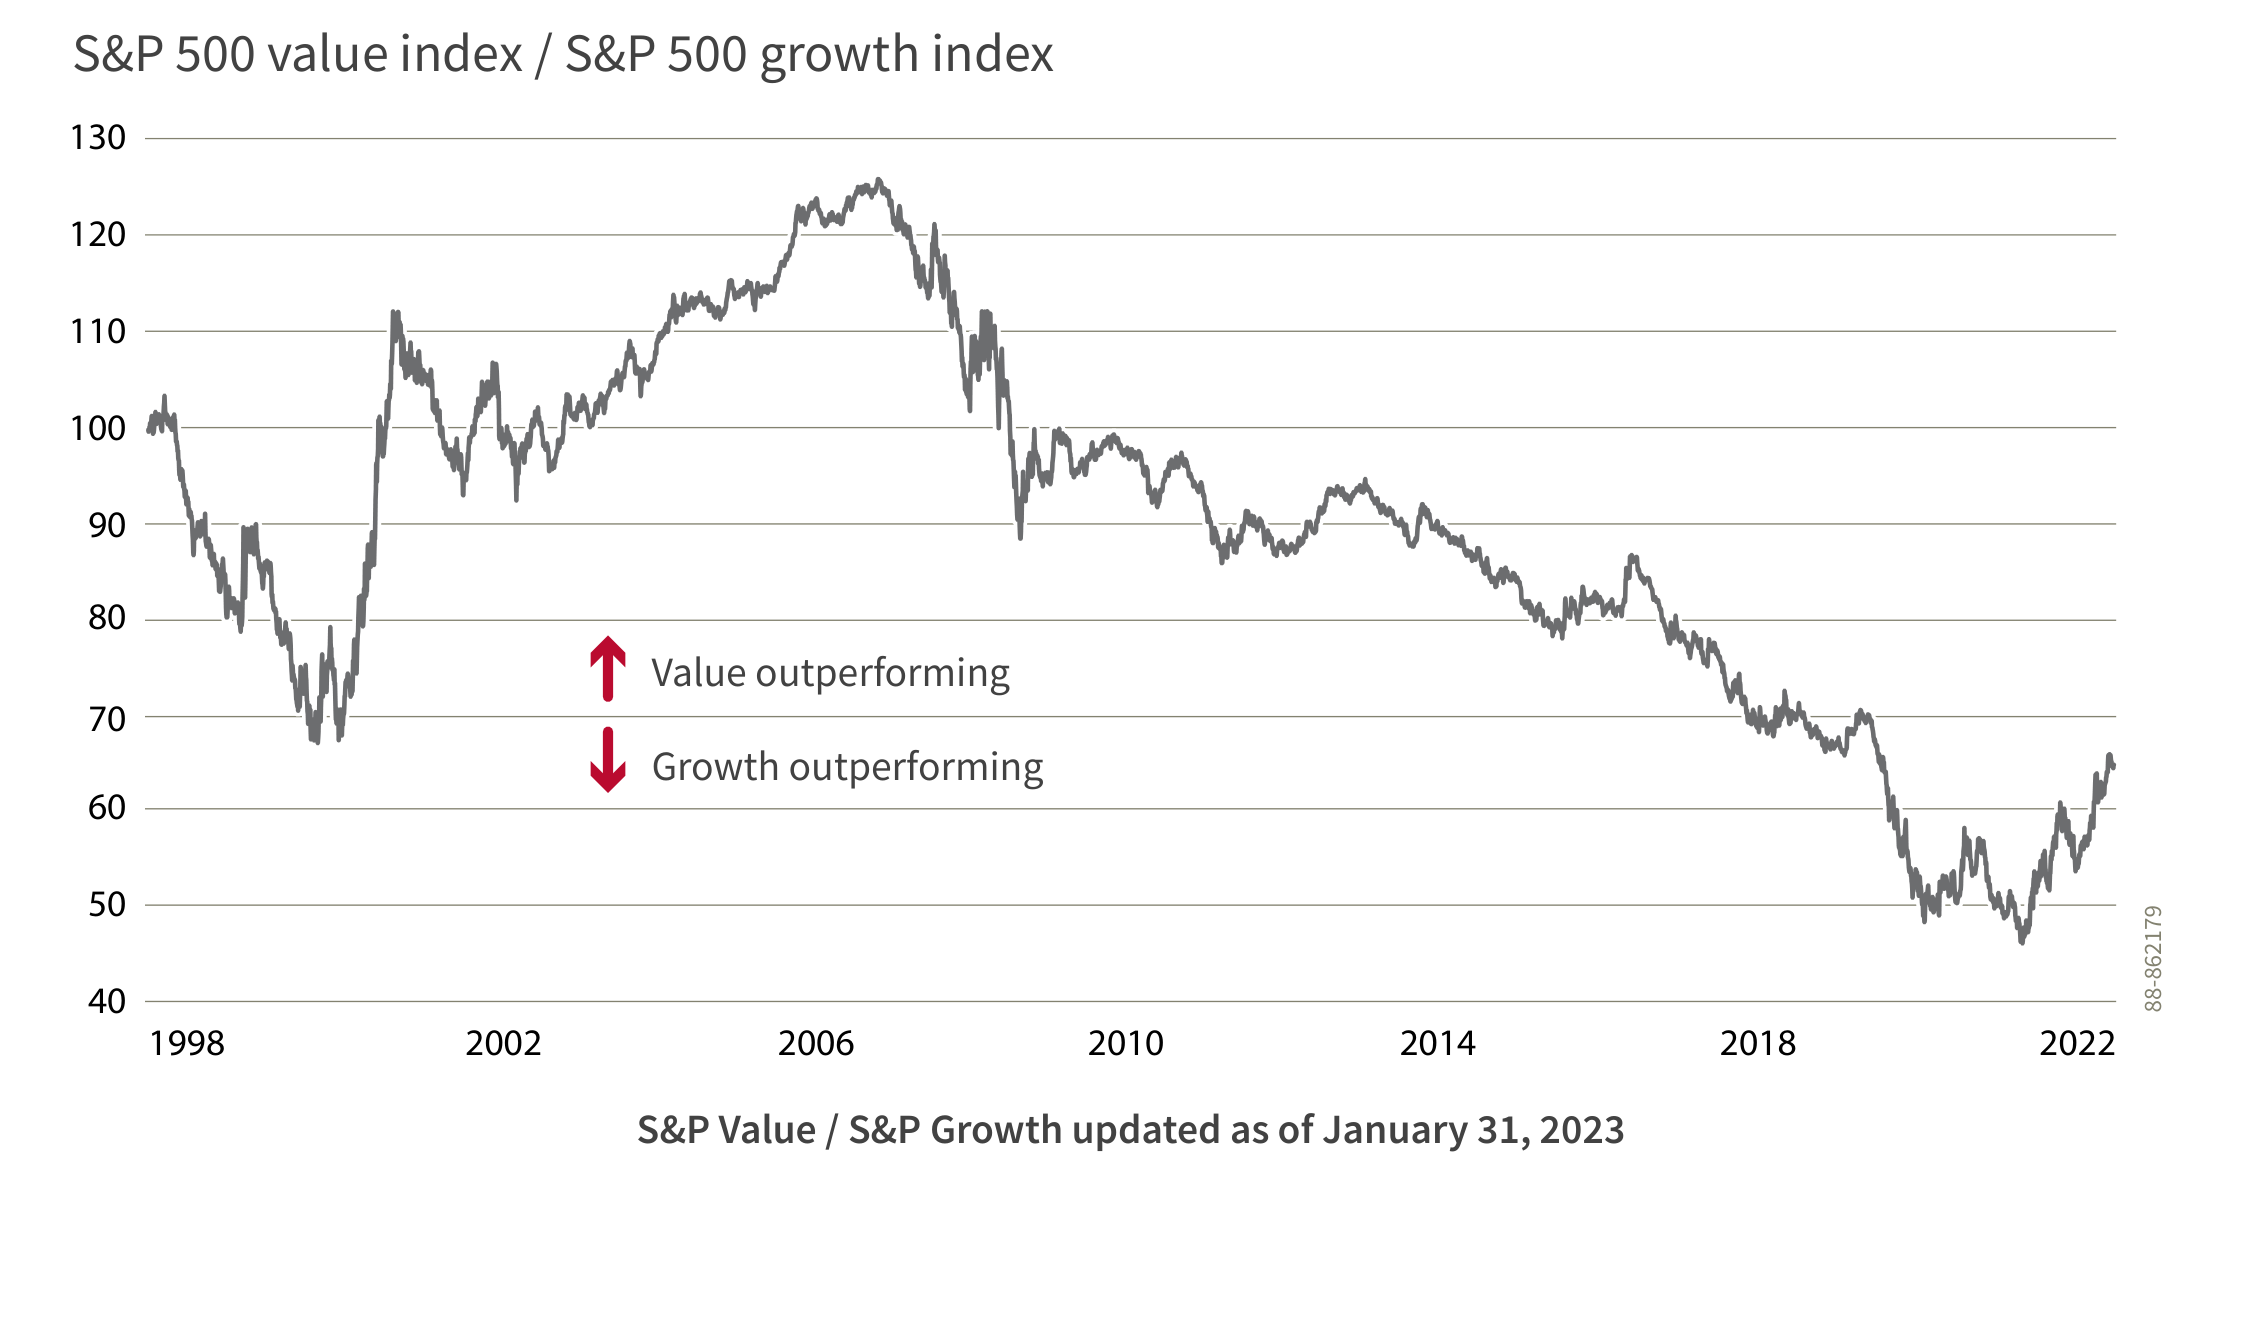 En divisant l’indice de valeur S&P 500 par l’indice de croissance S&P 500, le graphique qui suit montre le style de placement offrant le meilleur rendement à divers moments. Lorsque le style axé sur la valeur affiche un rendement supérieur, la courbe monte. Lorsque le style axé sur la croissance affiche un rendement supérieur, la courbe baisse.